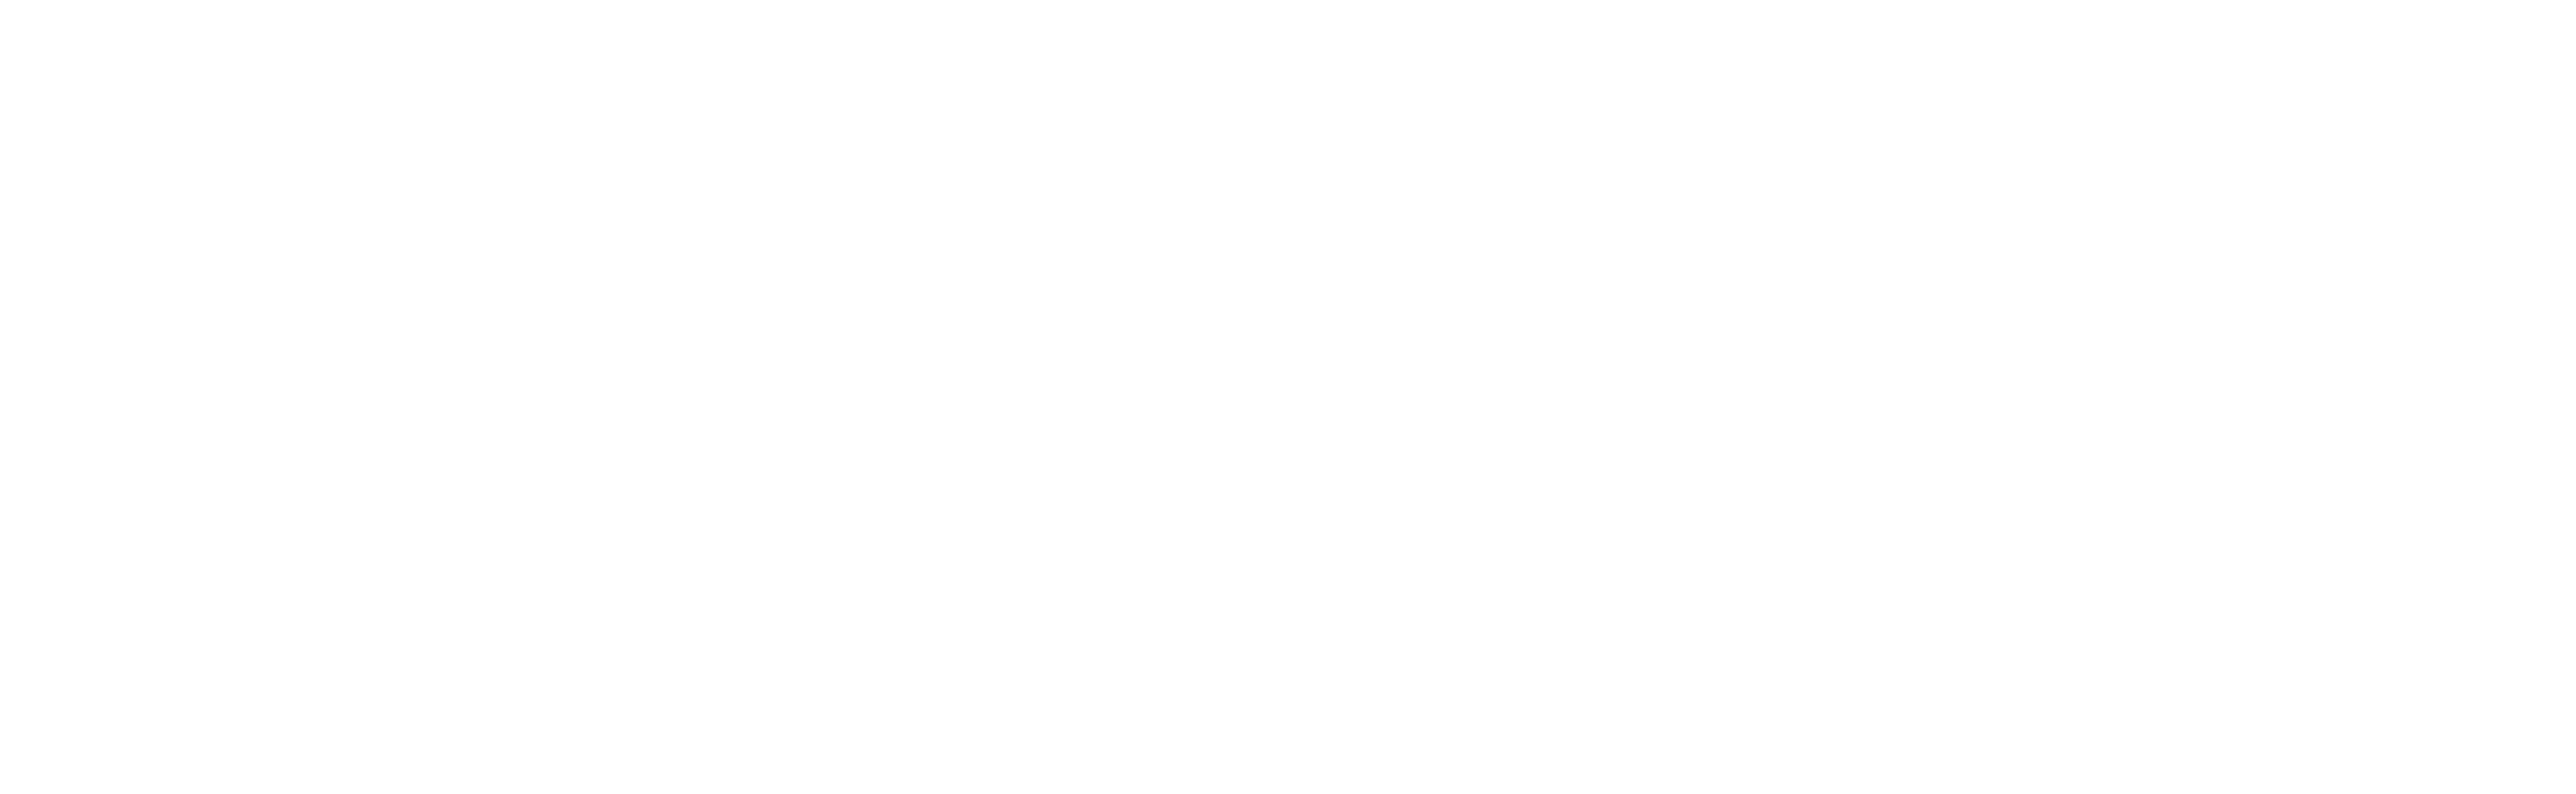 logo-footer-lokite-application-kitesurf-pour-ecoles-2